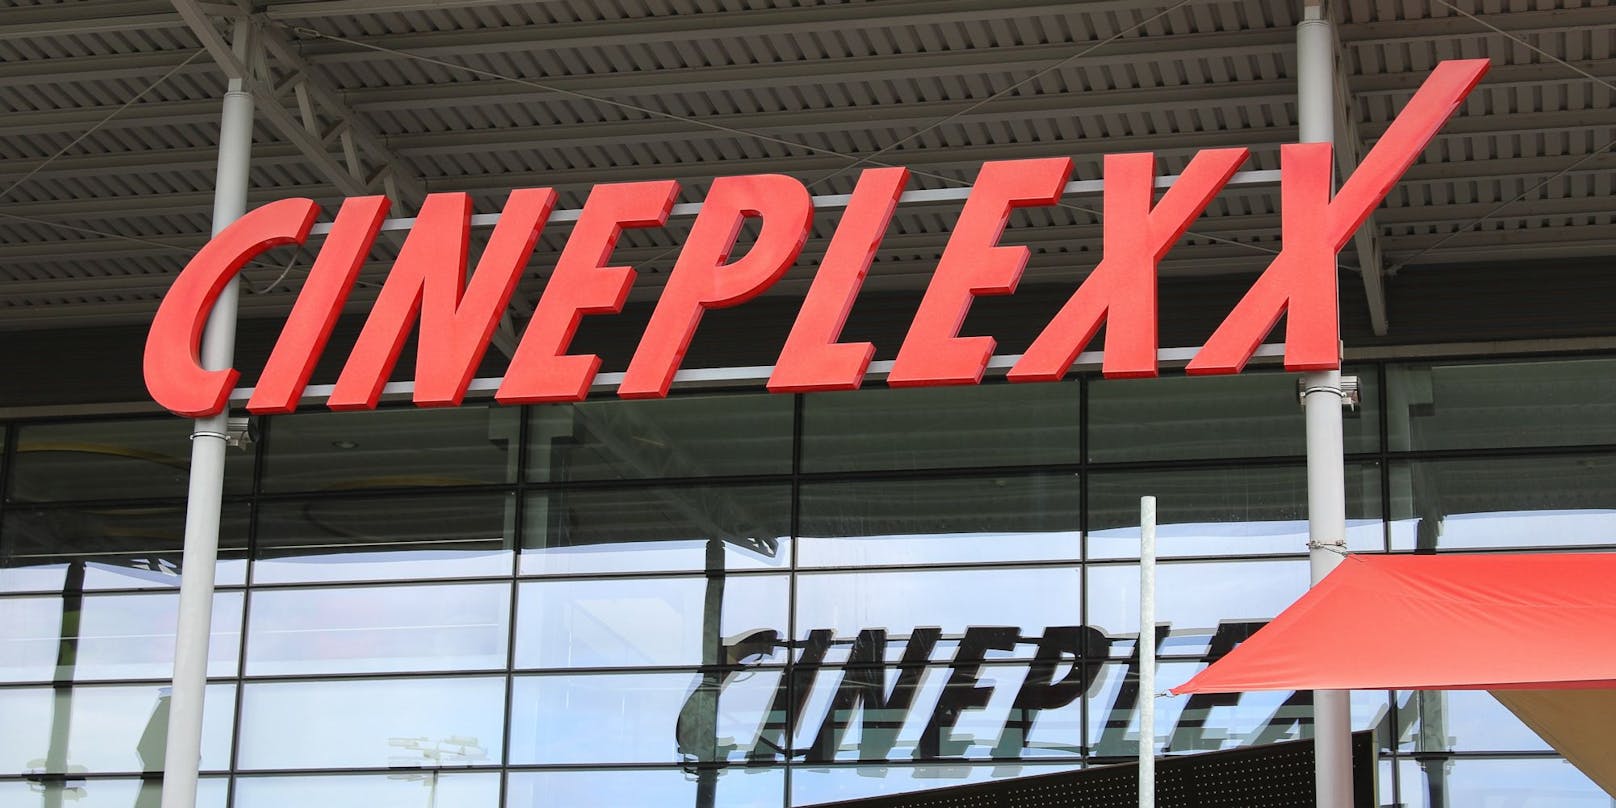 Der Cineplexx-Schriftzug. (Symbolfoto)